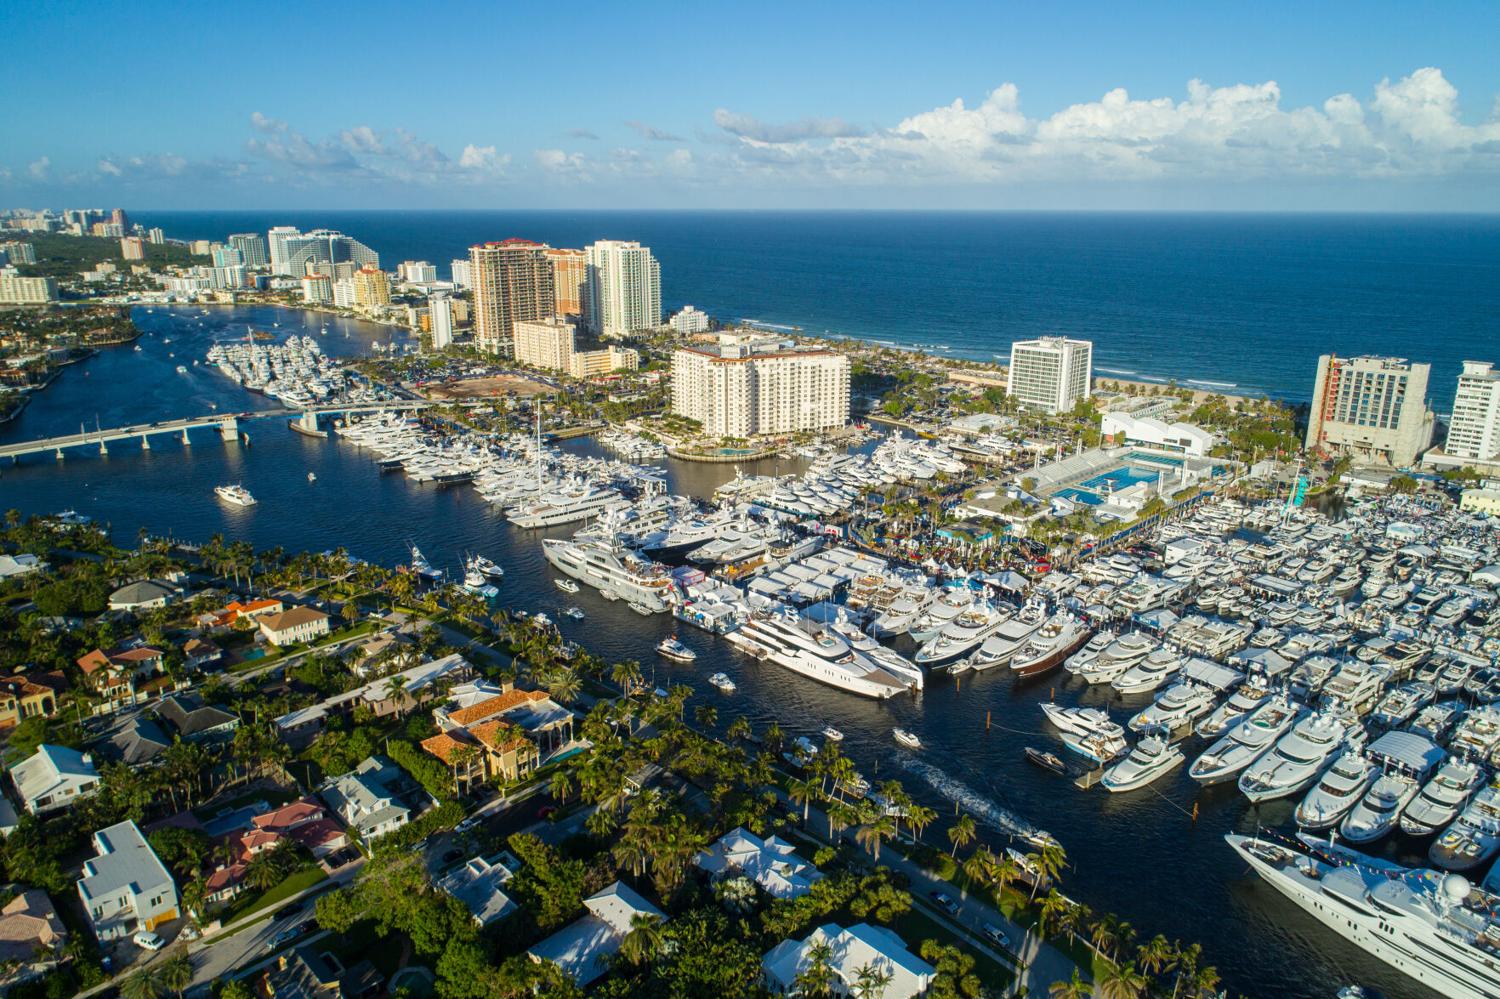 SoFlo Boat Show  Greater Miami & Miami Beach